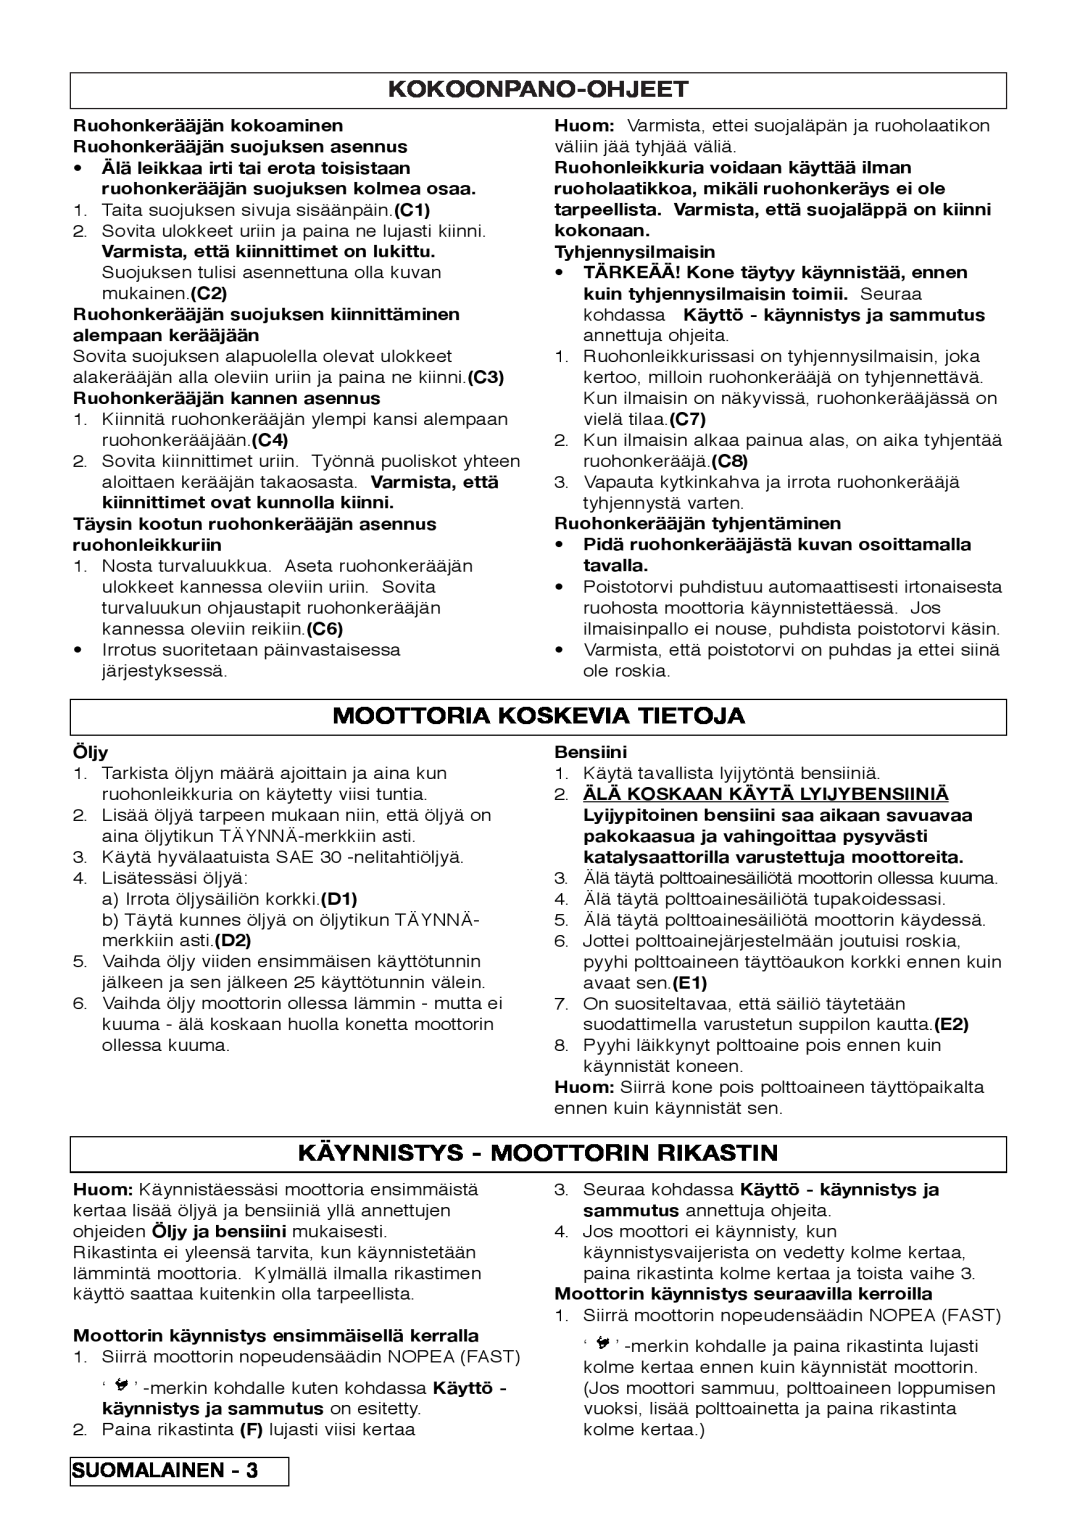 Husqvarna R 43SE manual Kokoonpano-Ohjeet, Moottoria Koskevia Tietoja, Käynnistys - Moottorin Rikastin 